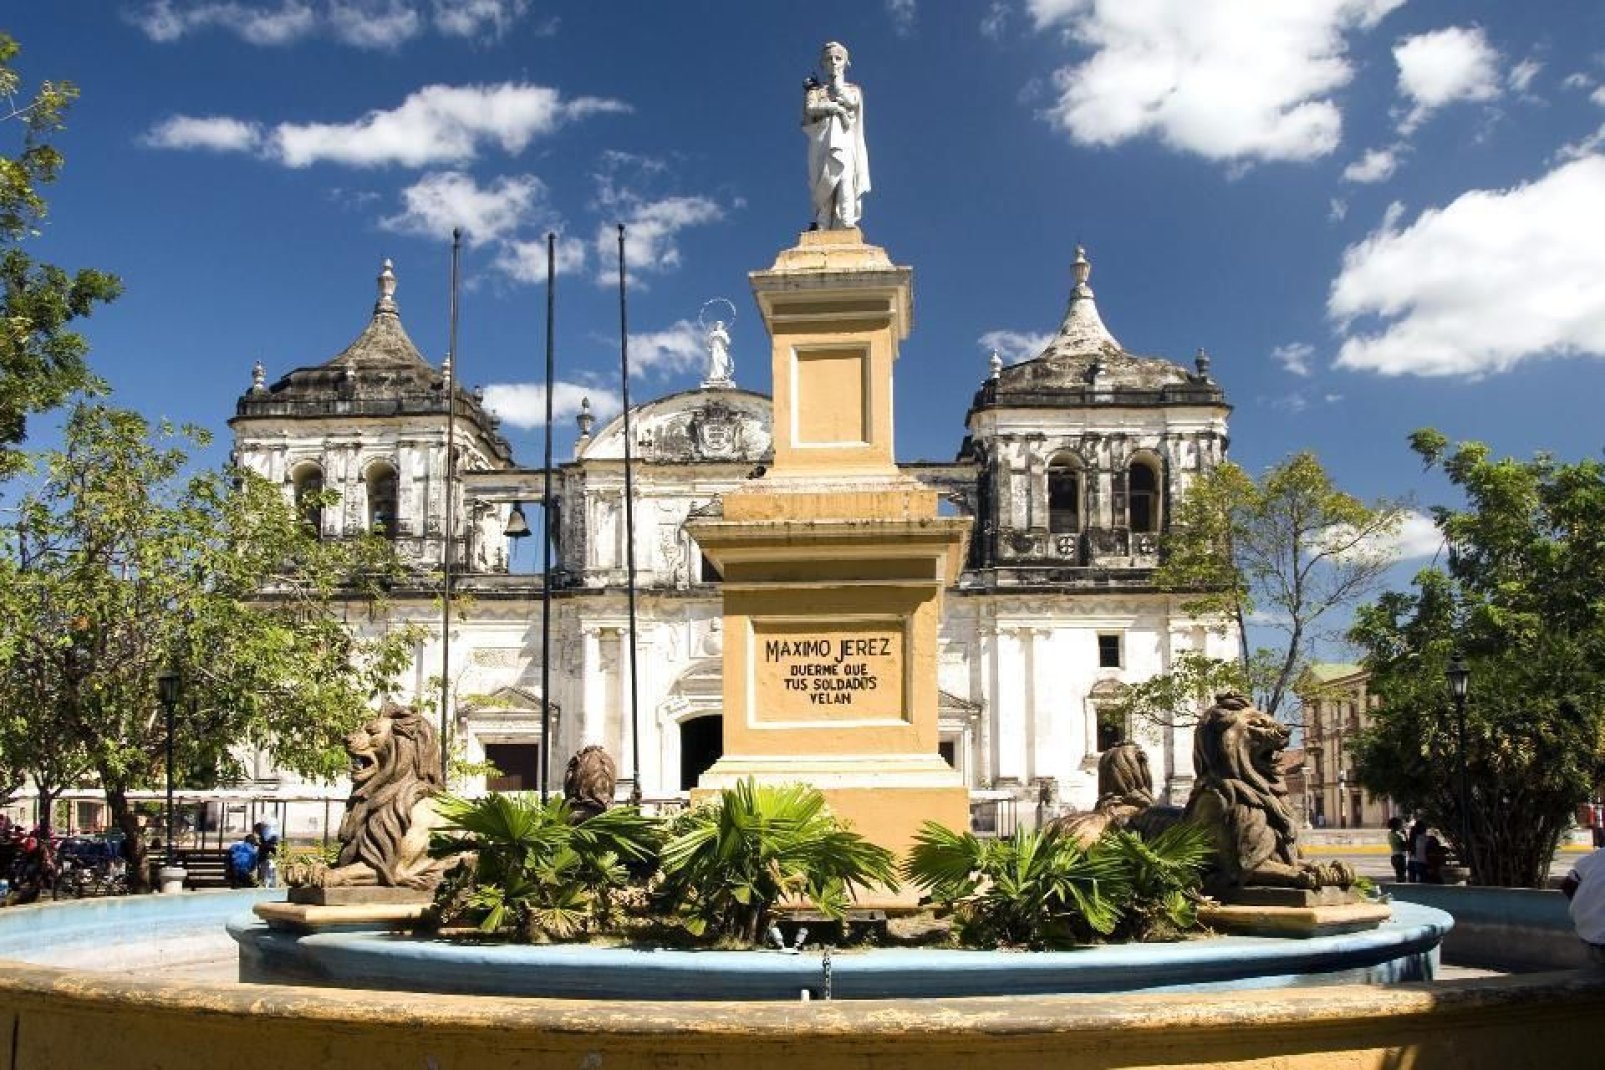 Die Kathedrale San Pedro ist ein neoklassisches Gebäude aus dem Jahre 1706 und befindet sich auf einem kleinen Platz, der von Häusern im Kolonialstil gesäumt ist.